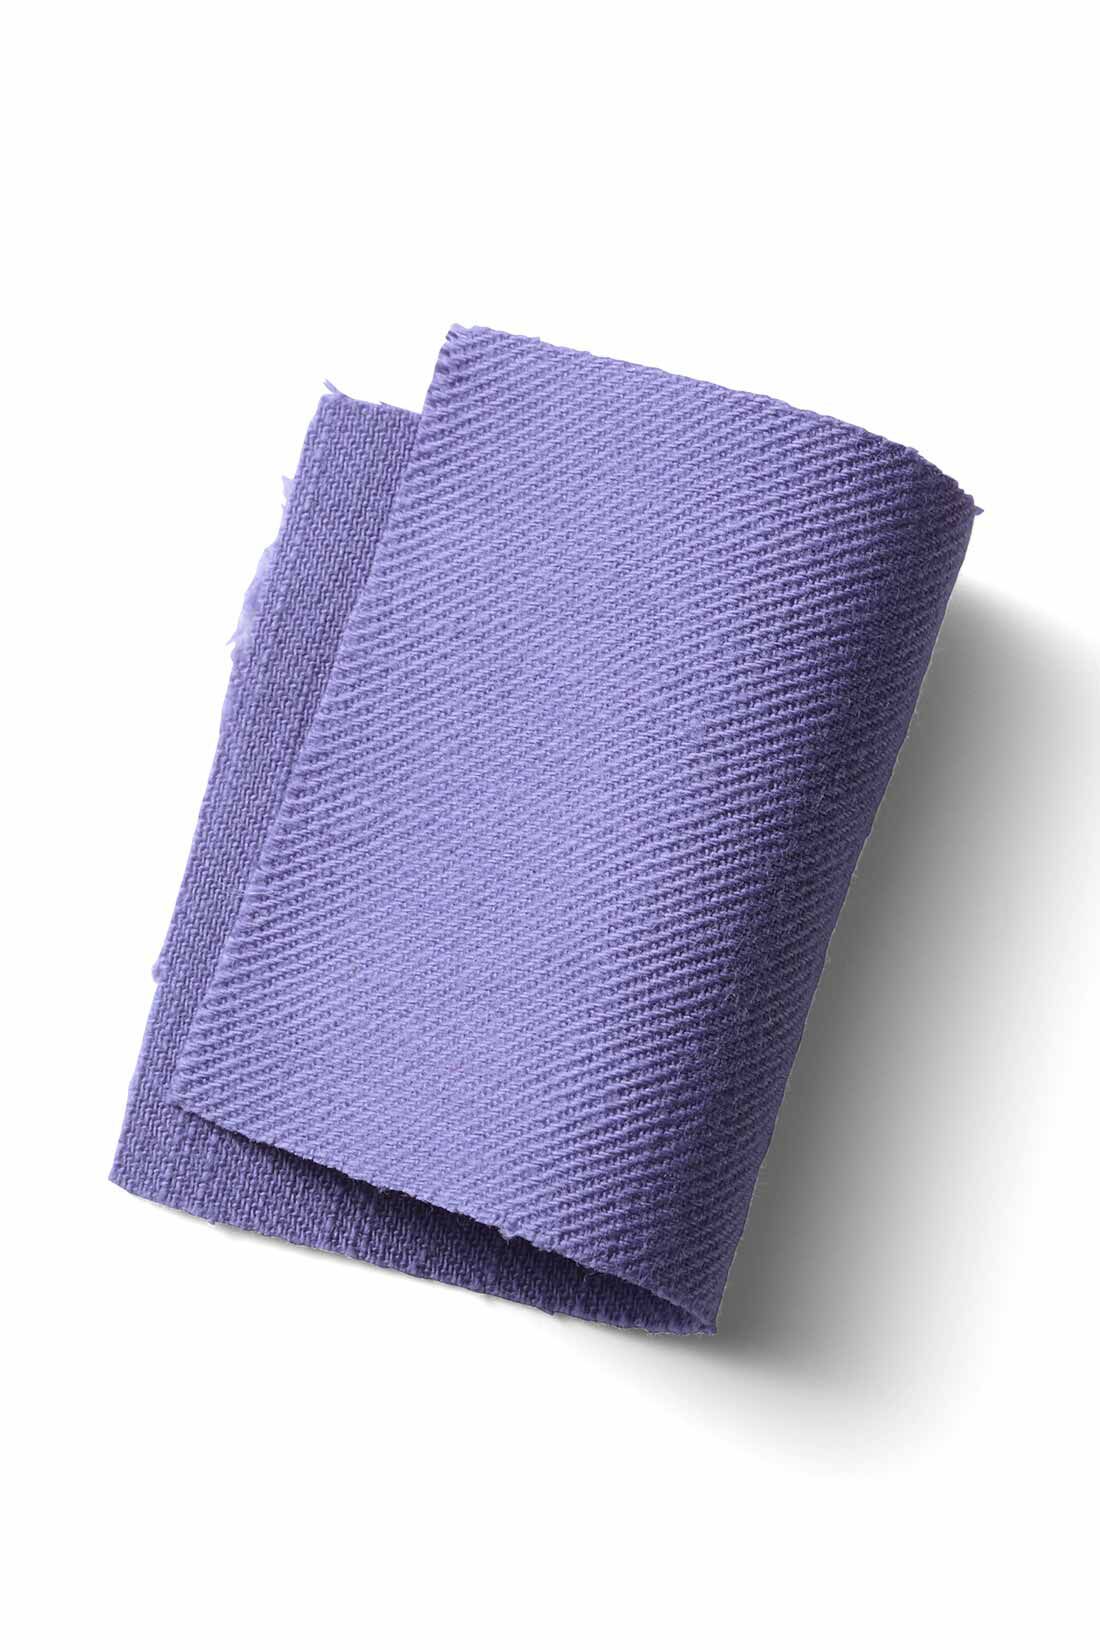 MEDE19F|MEDE19F　ライトオンスコットンオーバーオール〈パープル〉|軽く着られる、ライトオンスの綿素材。ゆるさのあるやわらかな風合いが夏に快適です。